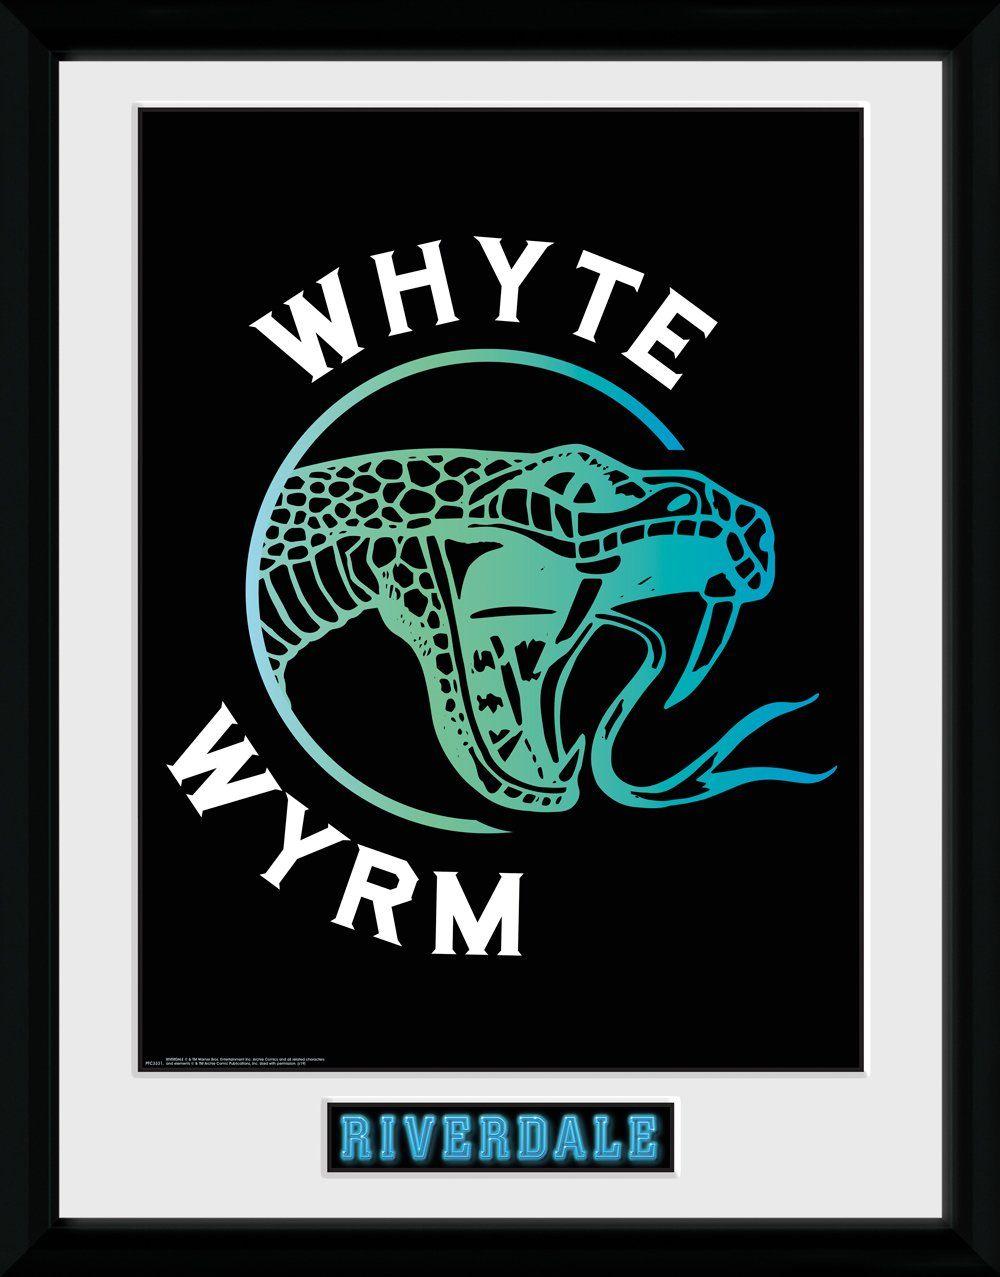 Wyrm Logo - Pfc3331 Riverdale Whyte Wyrm